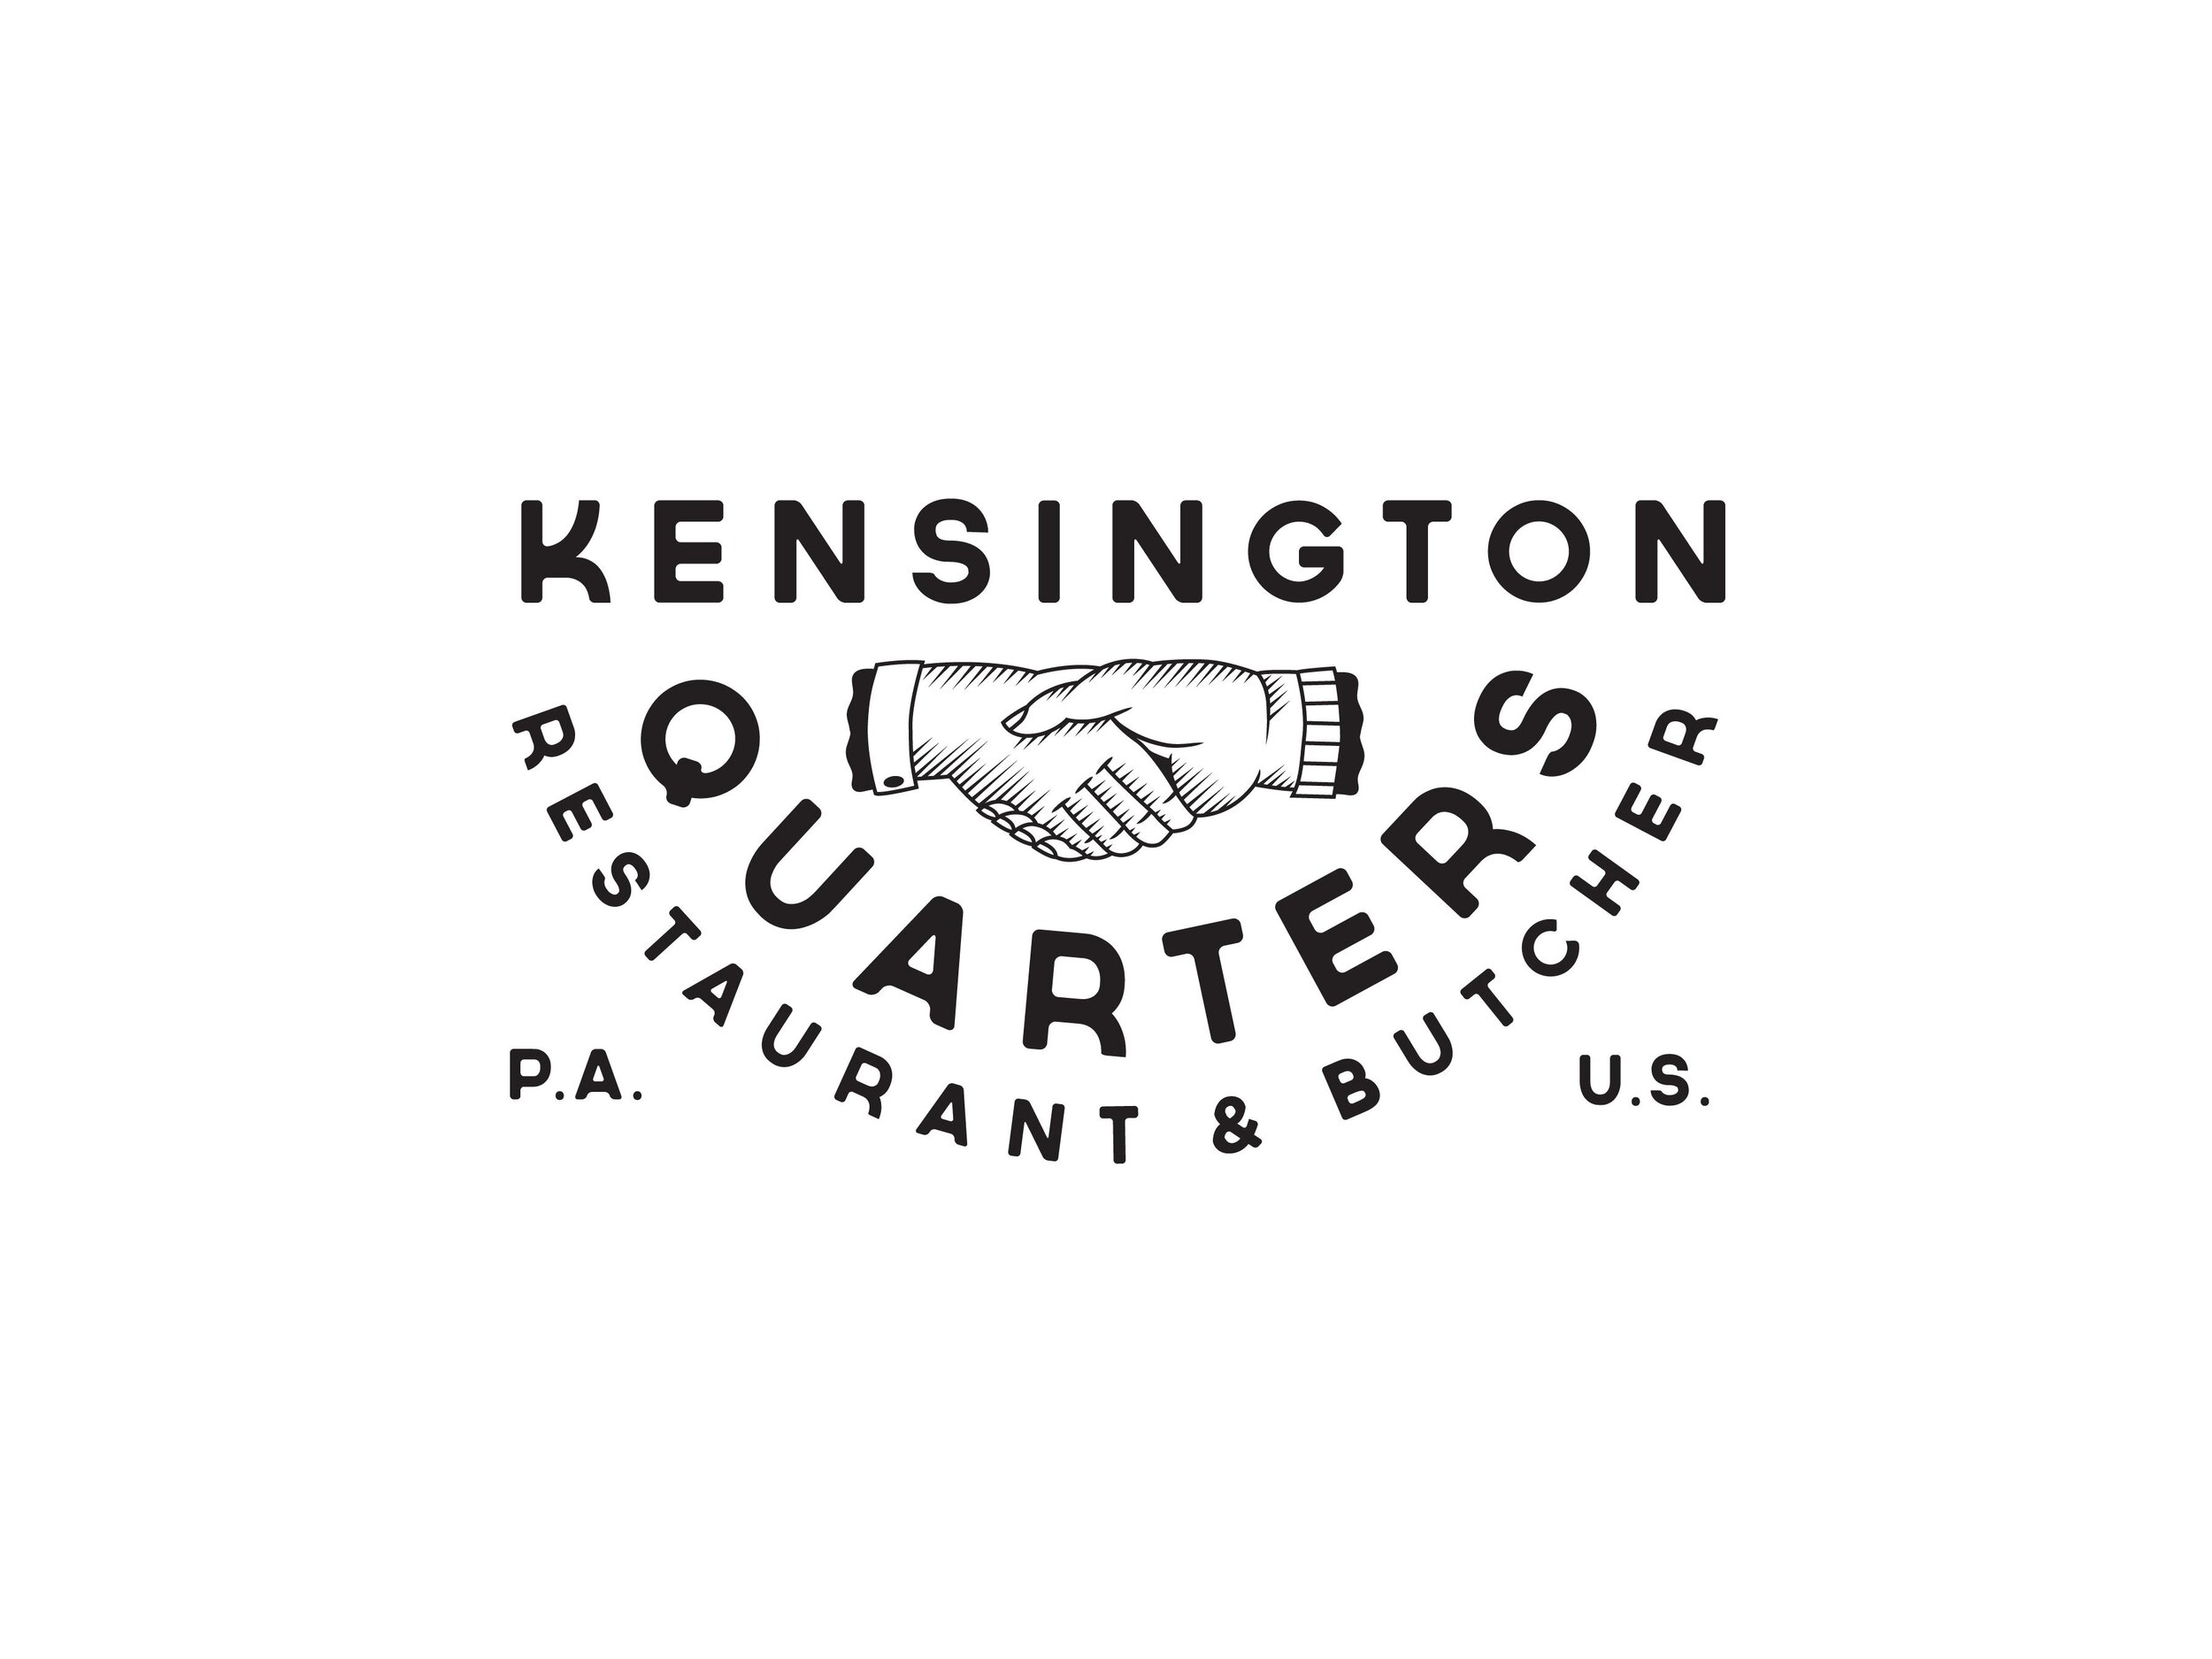 Kensington Quarters logo.jpeg